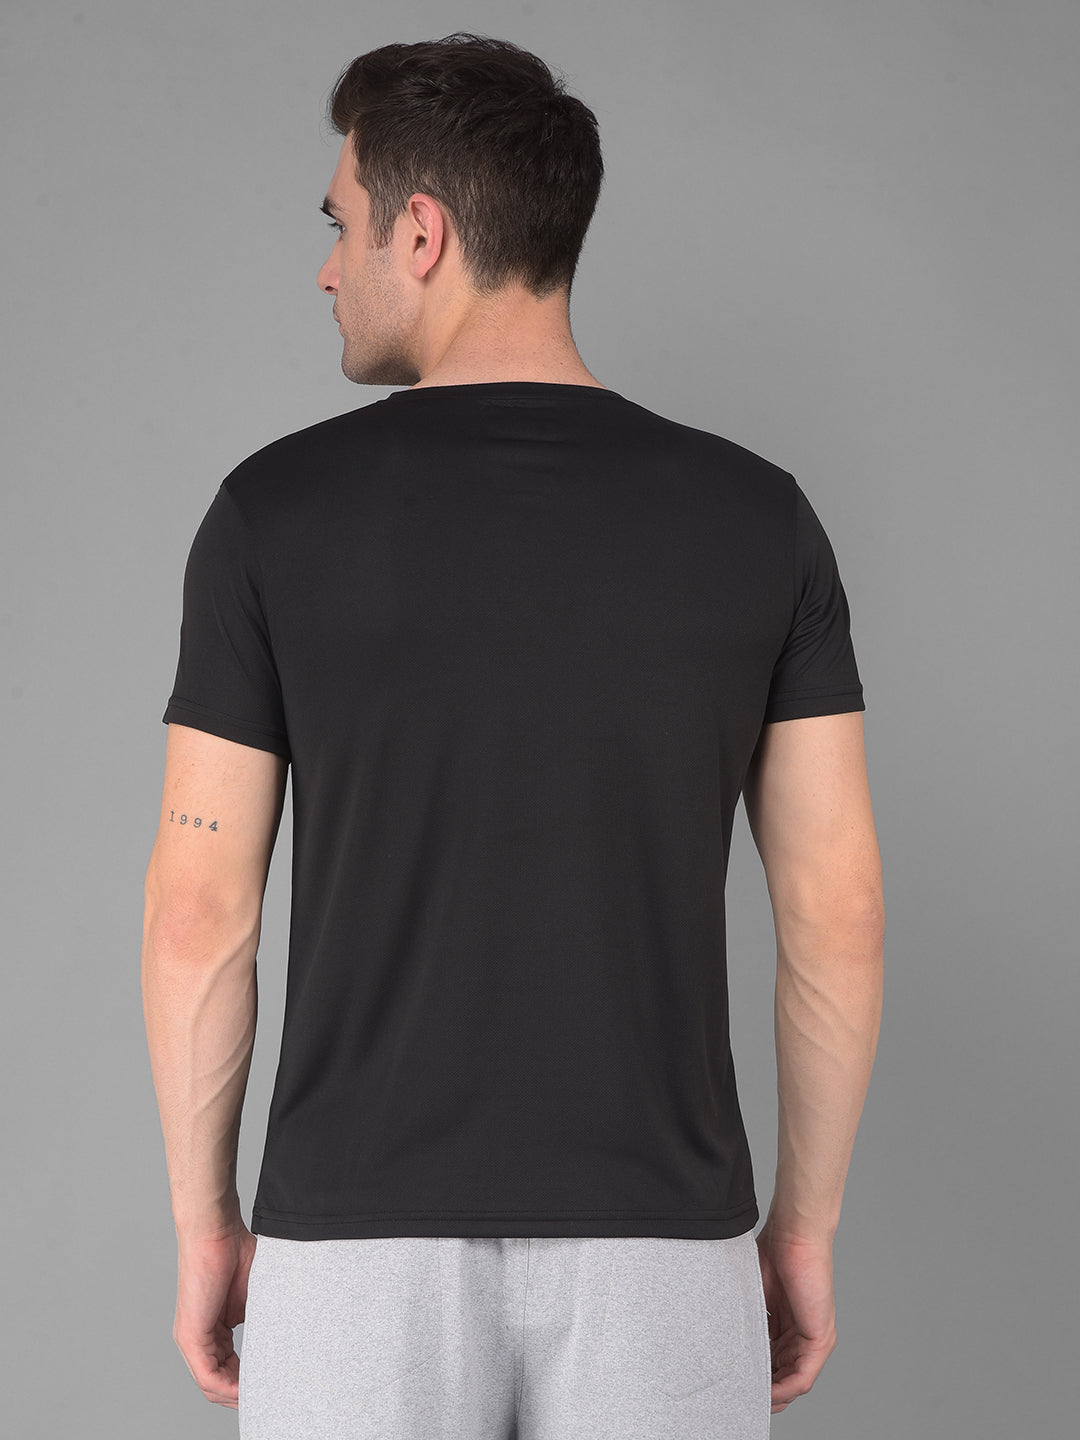 cobb solid black round neck active wear t-shirt